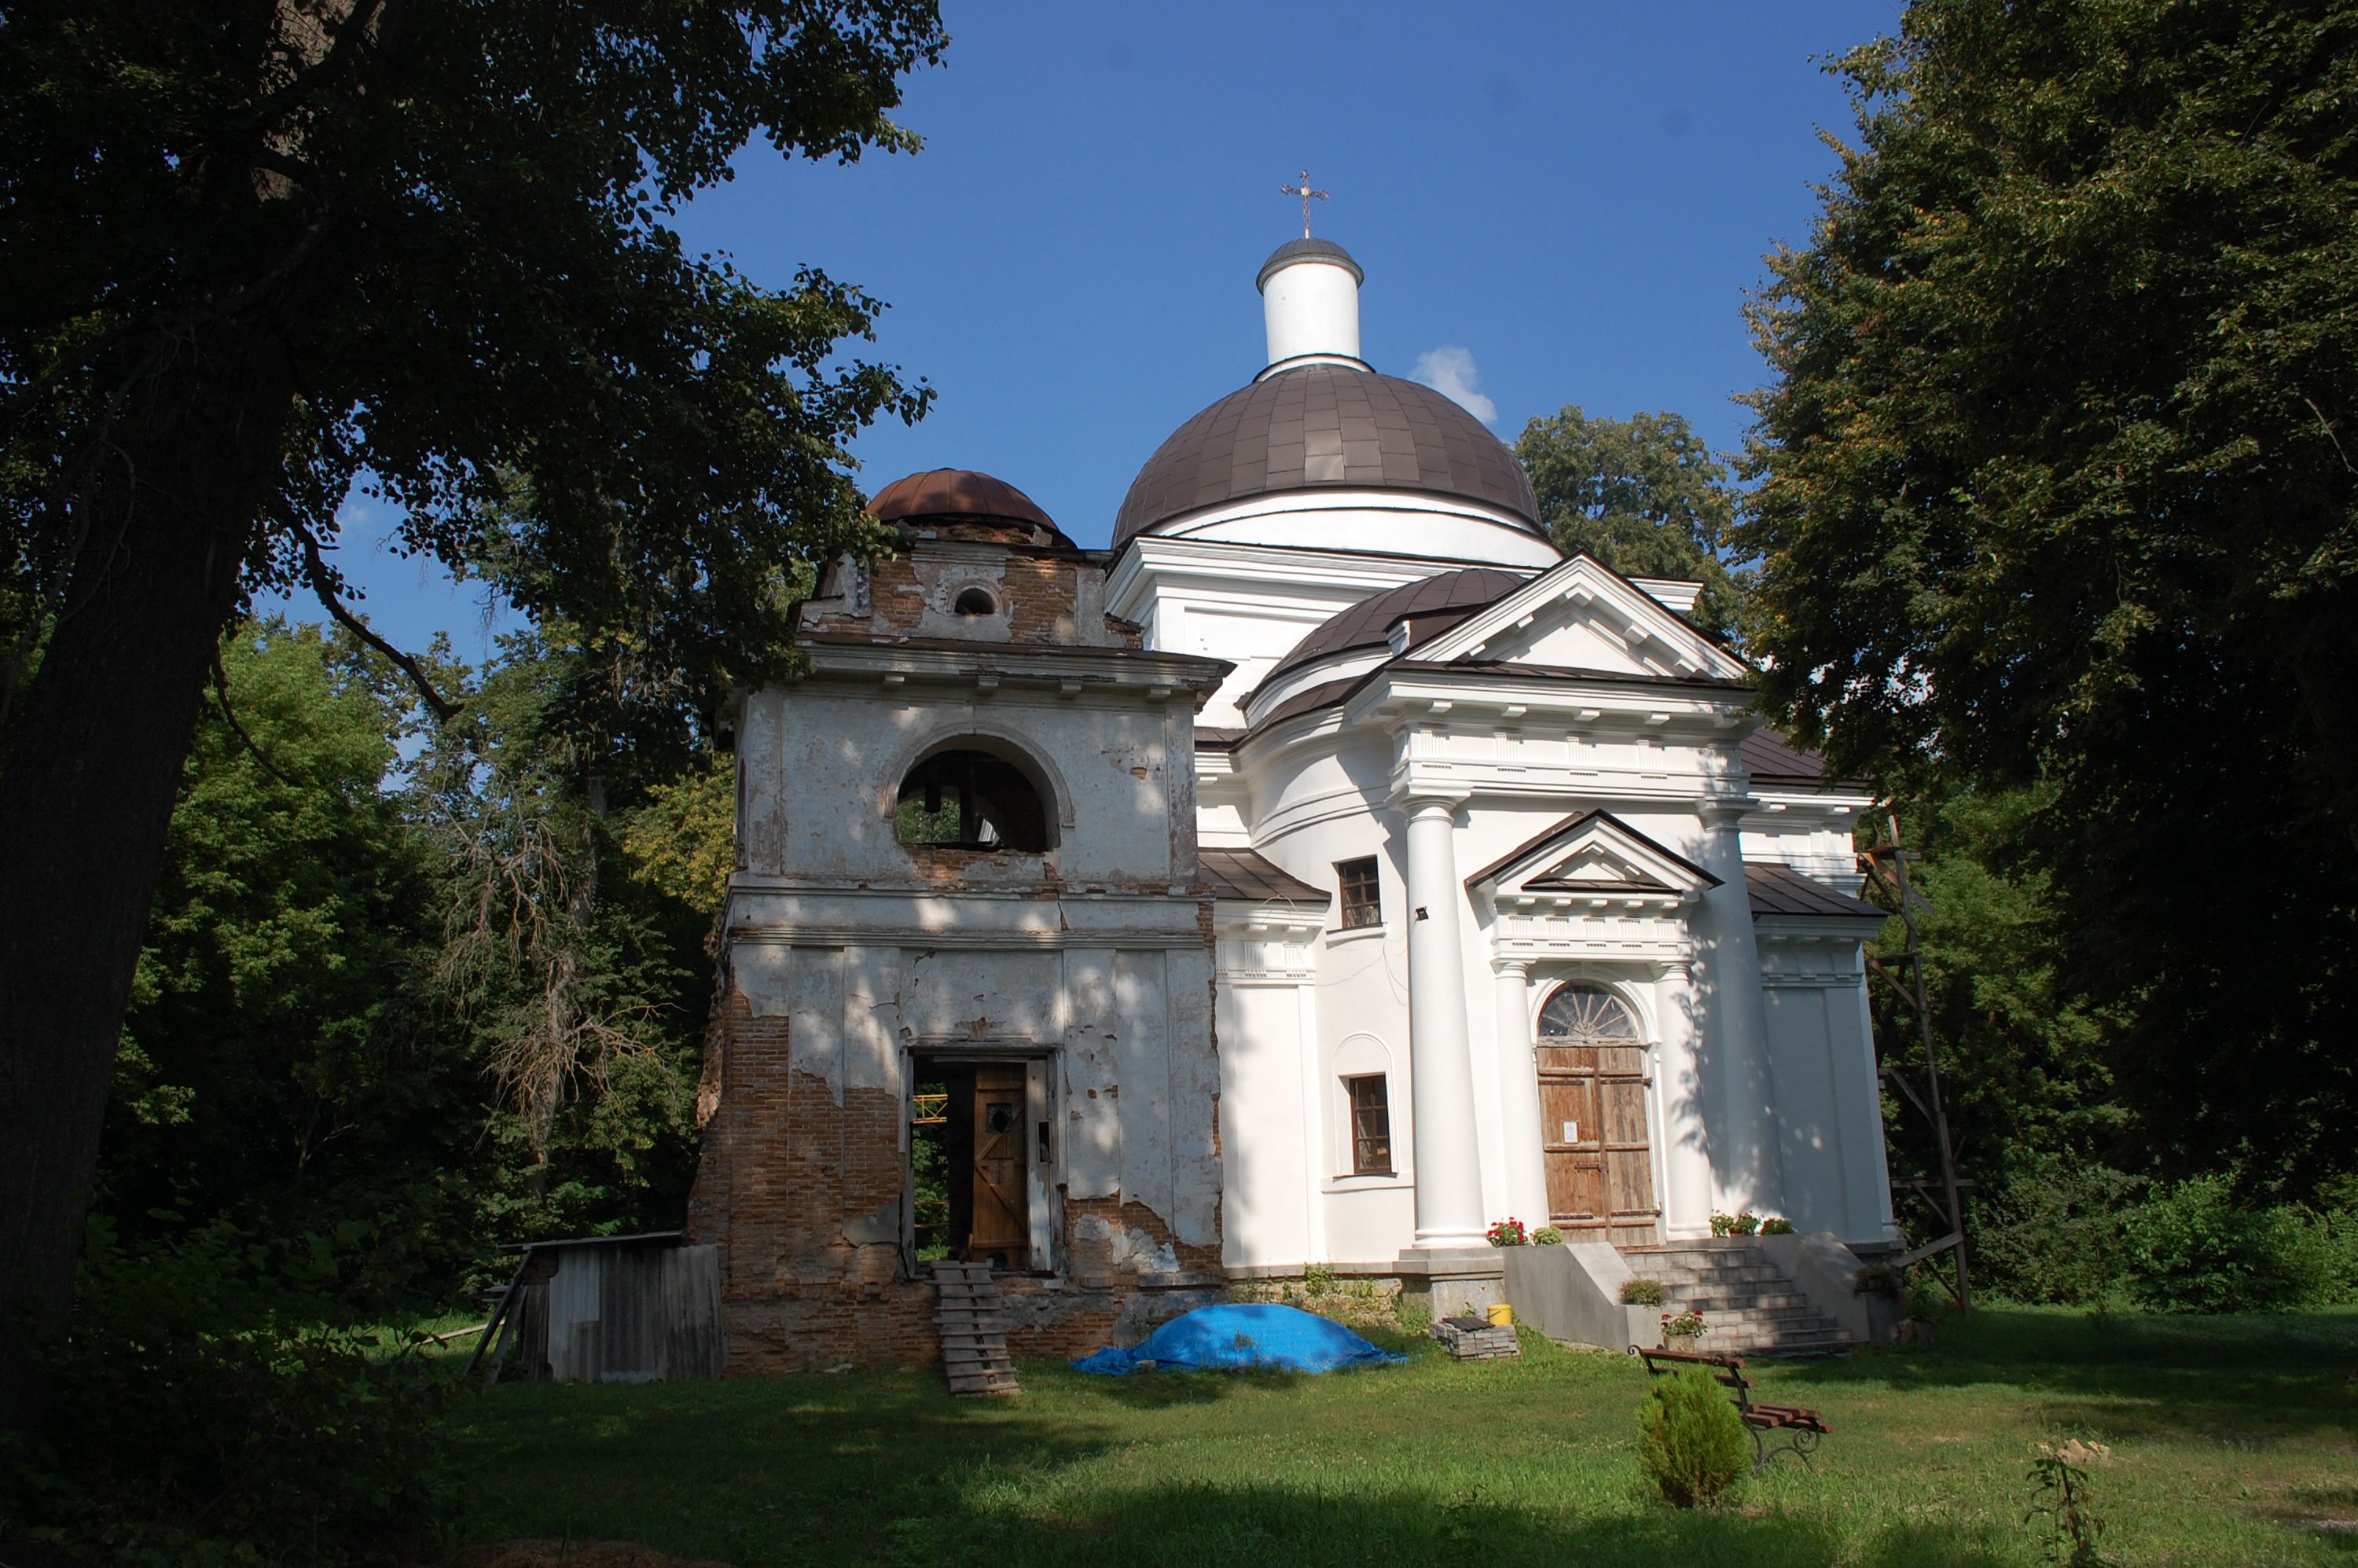 Чернігівщина: храм у лісі без замків, але з історією… - фото 79069